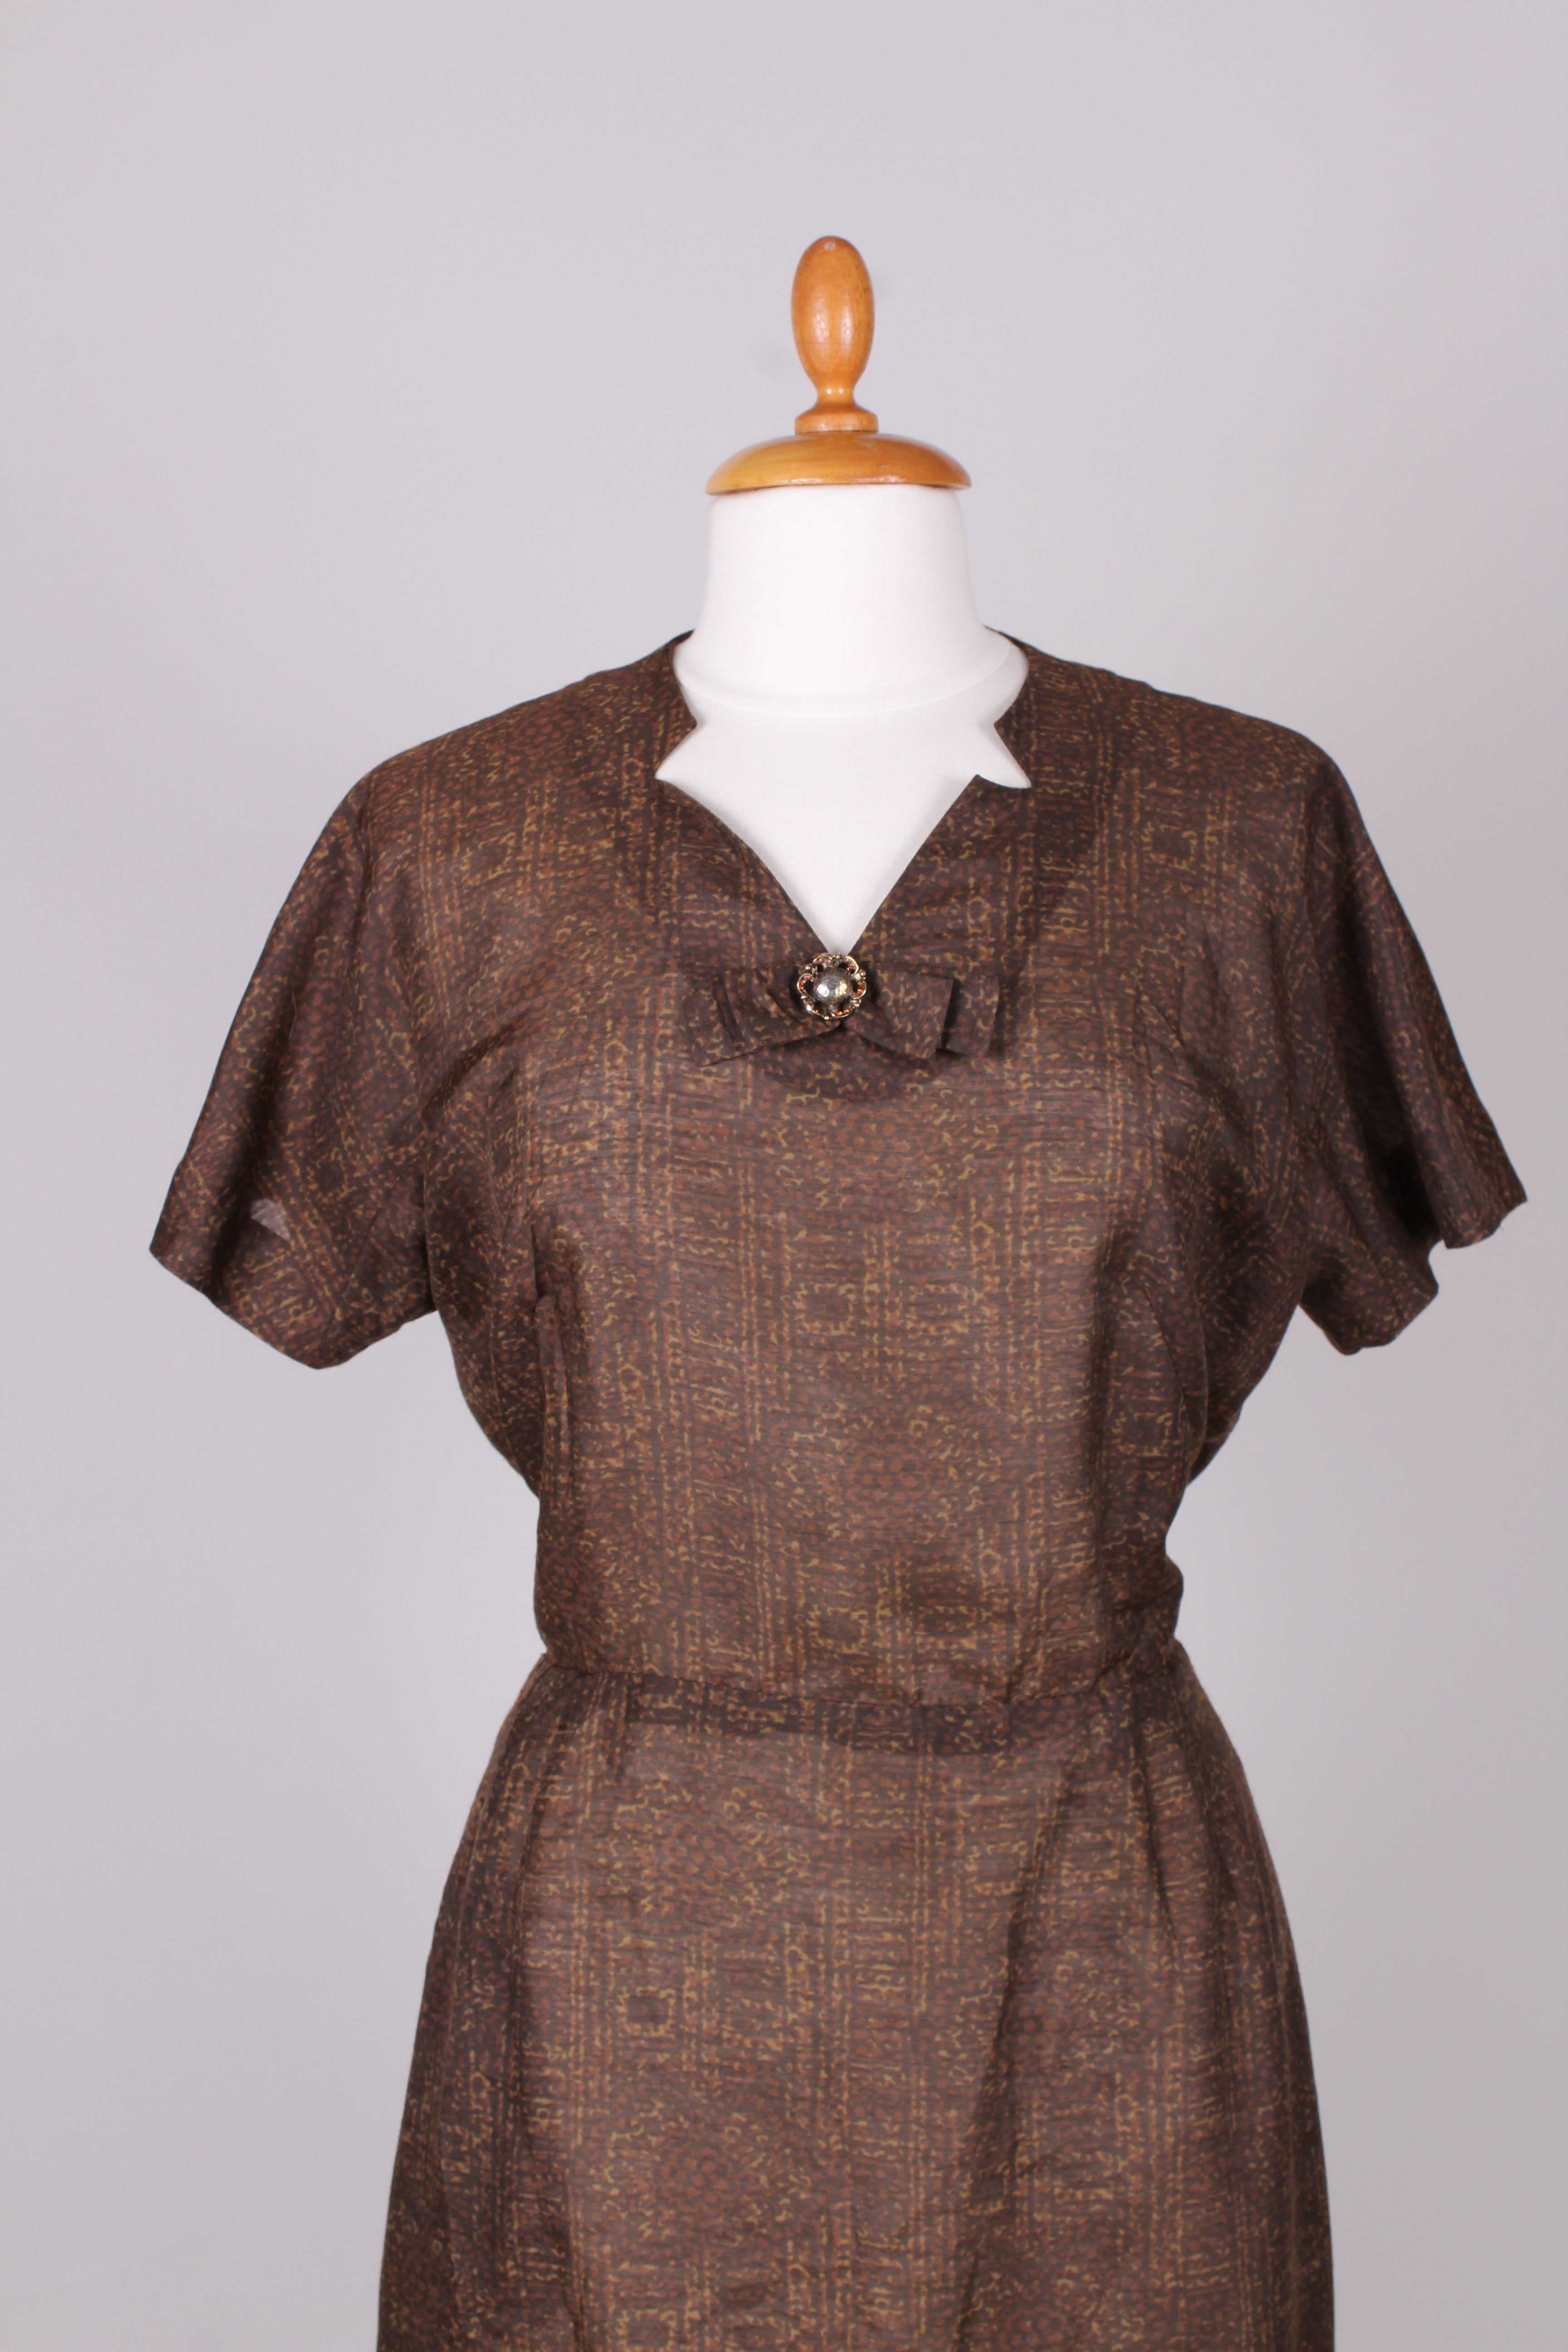 Tjen klatre spids Brun kjole USA, 1960. M – Vintage Divine v. memery Aps